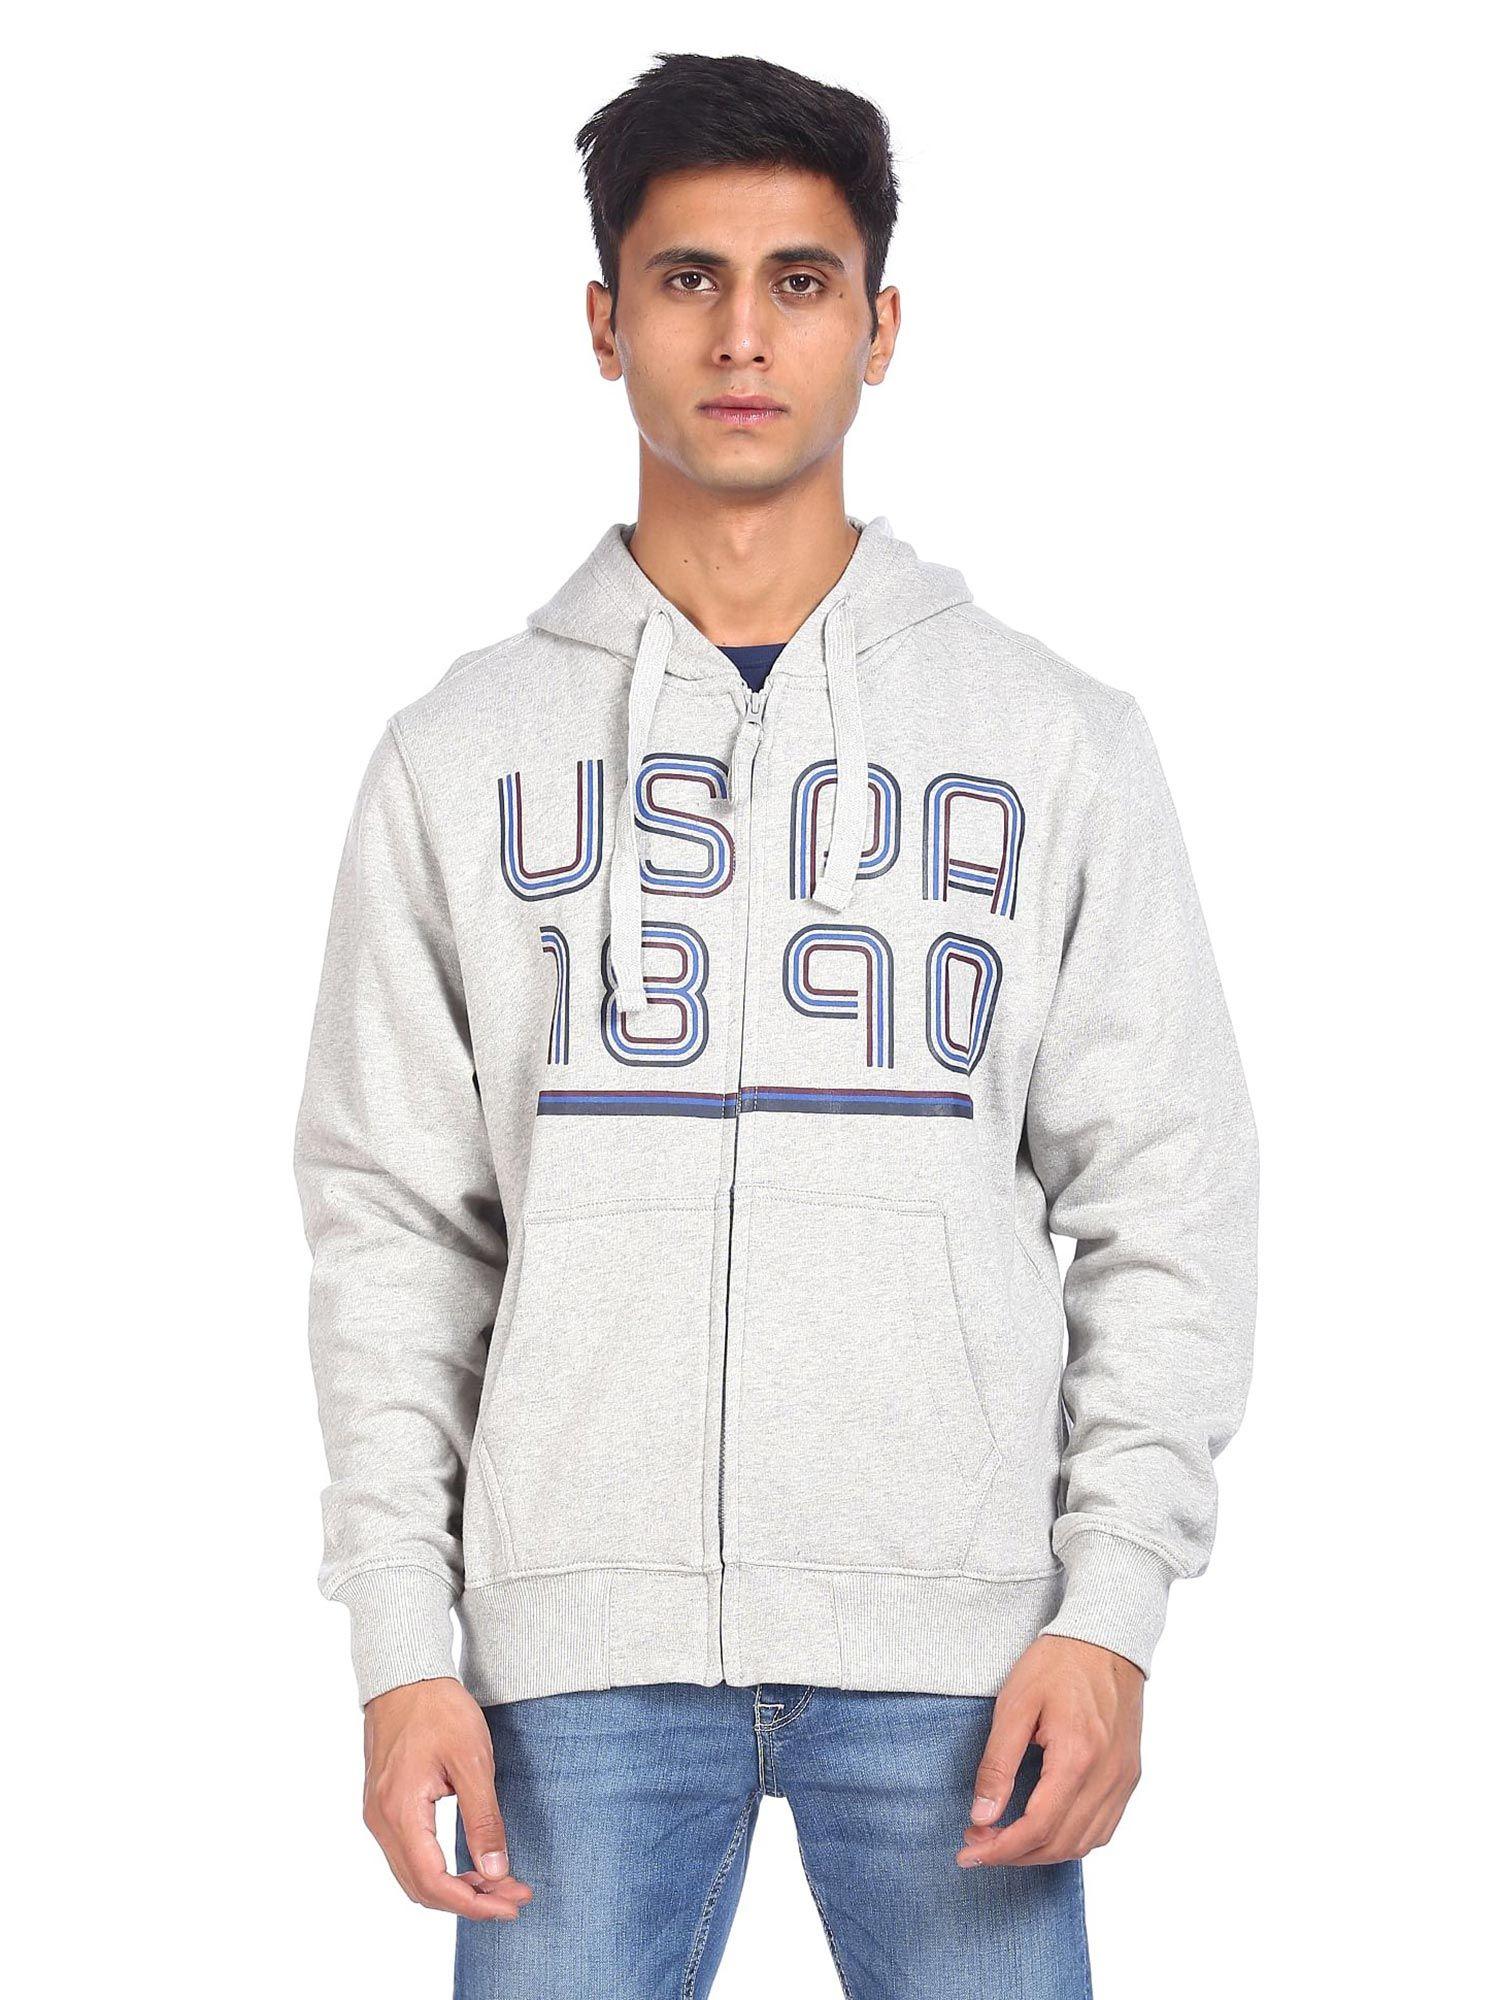 men-grey-hooded-brand-printed-sweatshirt